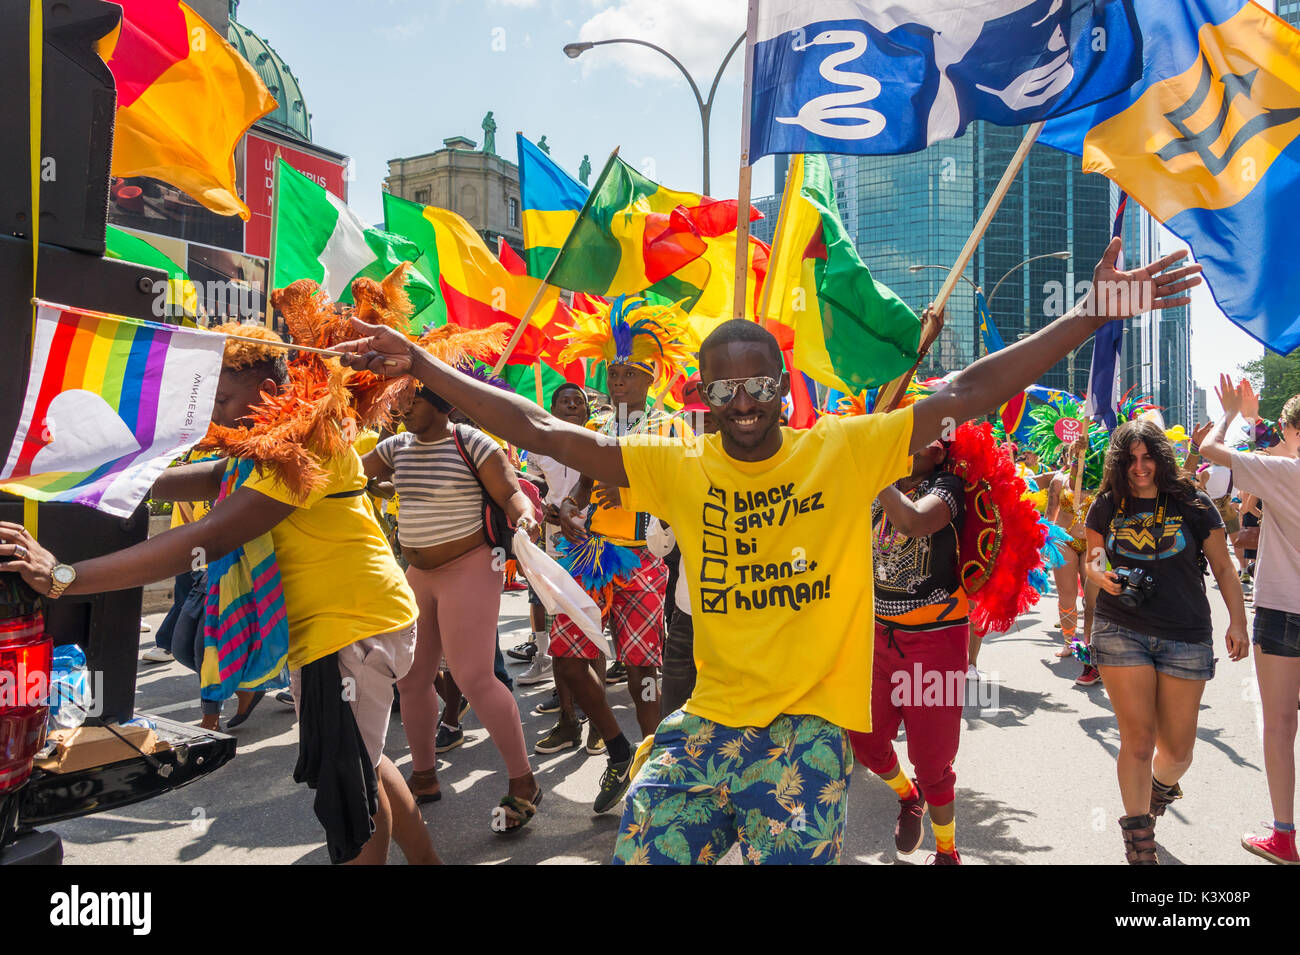 Montréal, Canada - 20 août 2017 : un membre de l'association Arc-en-ciel d'Afrique prend part à la parade de la Fierté gaie de Montréal Banque D'Images